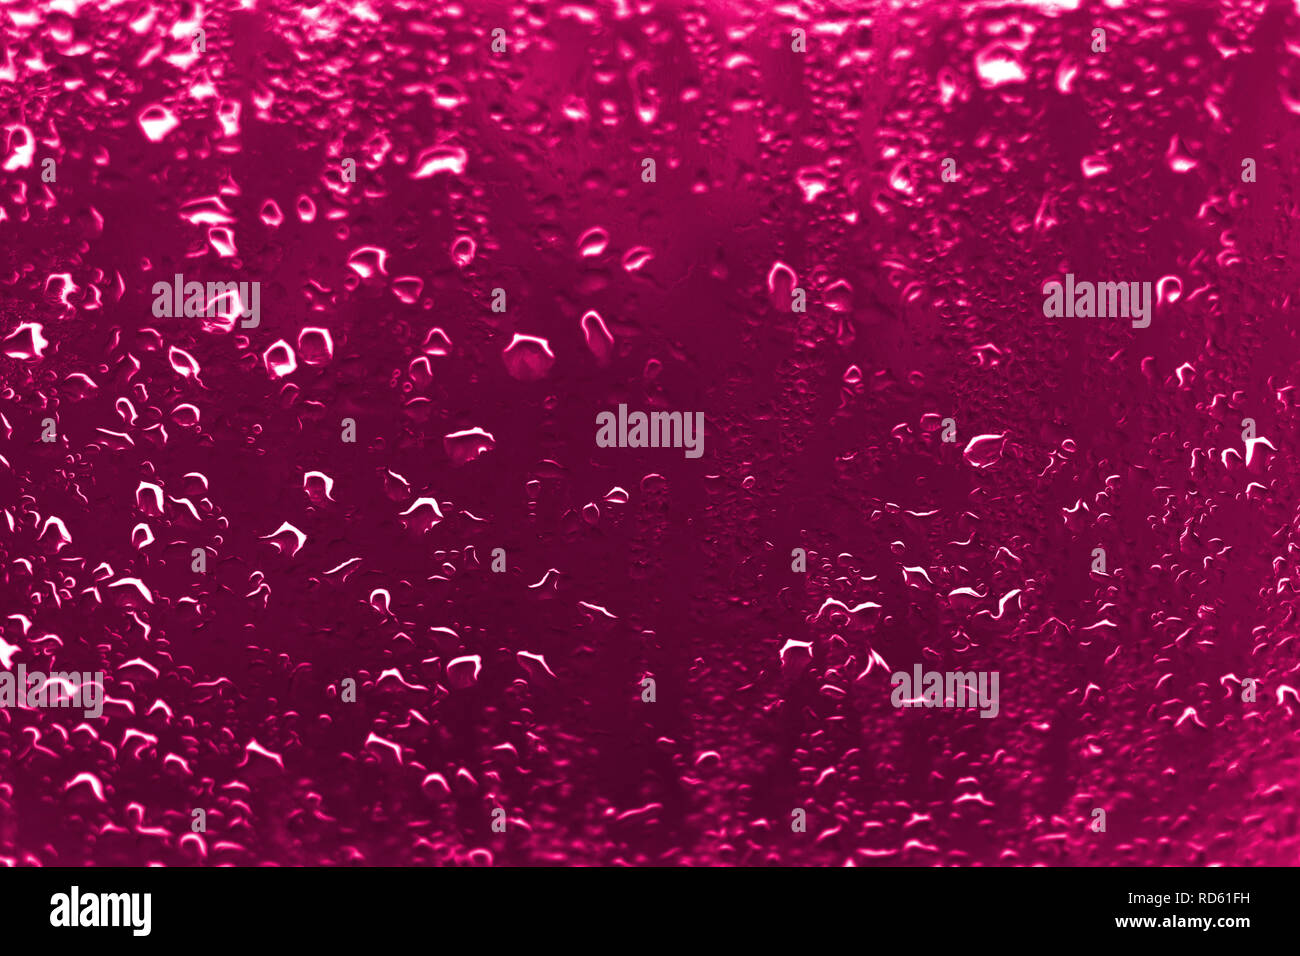 Hoher Kontrast Foto von Regentropfen auf einem Fenster Glas mit lebhafter rötlich rosa Farbe Stockfoto